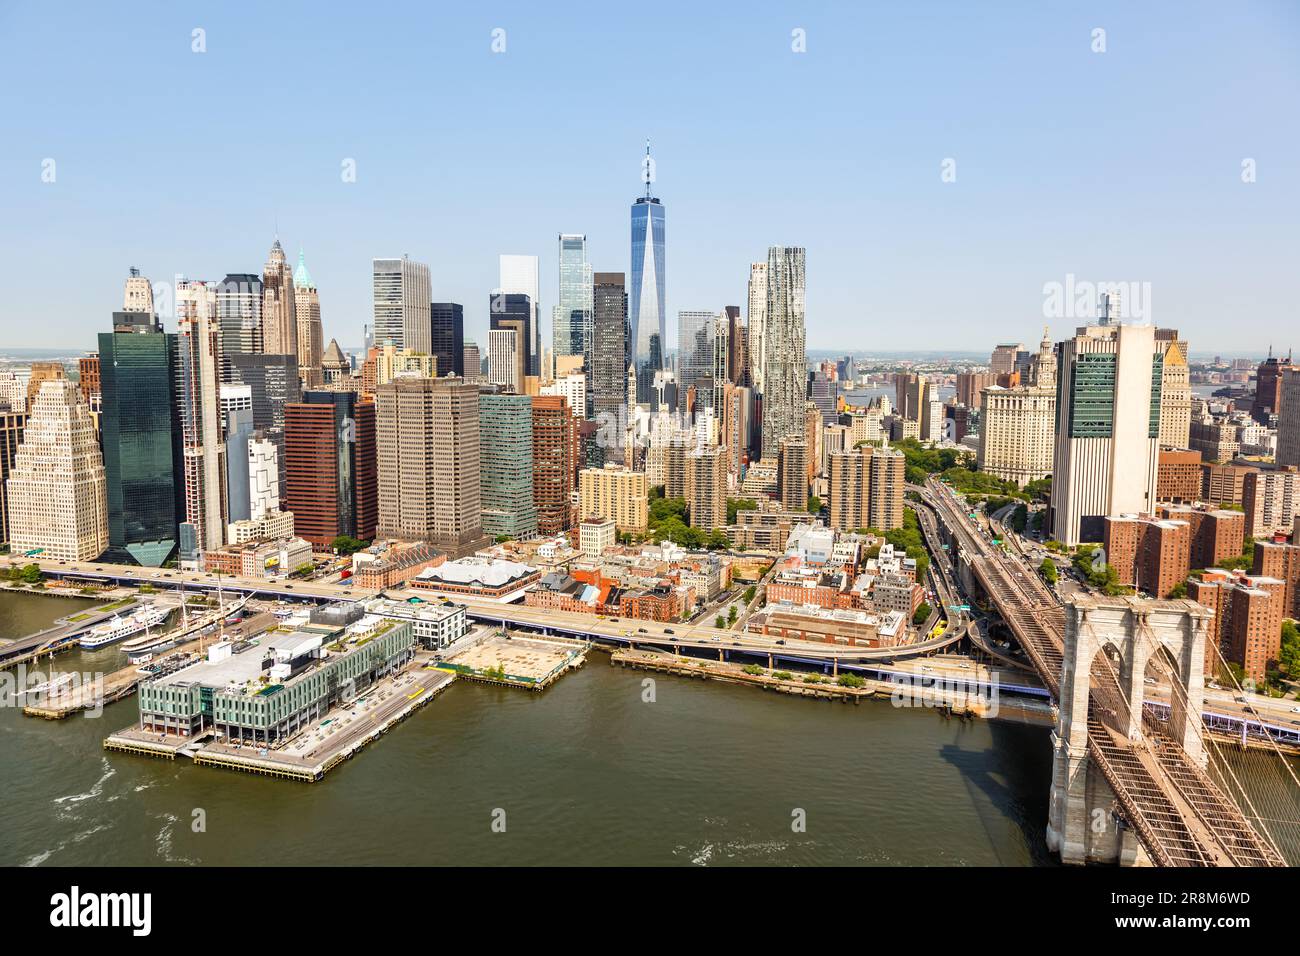 Foto aerea dello skyline di New York City di Manhattan con il grattacielo del World Trade Center e il Ponte di Brooklyn negli Stati Uniti Foto Stock